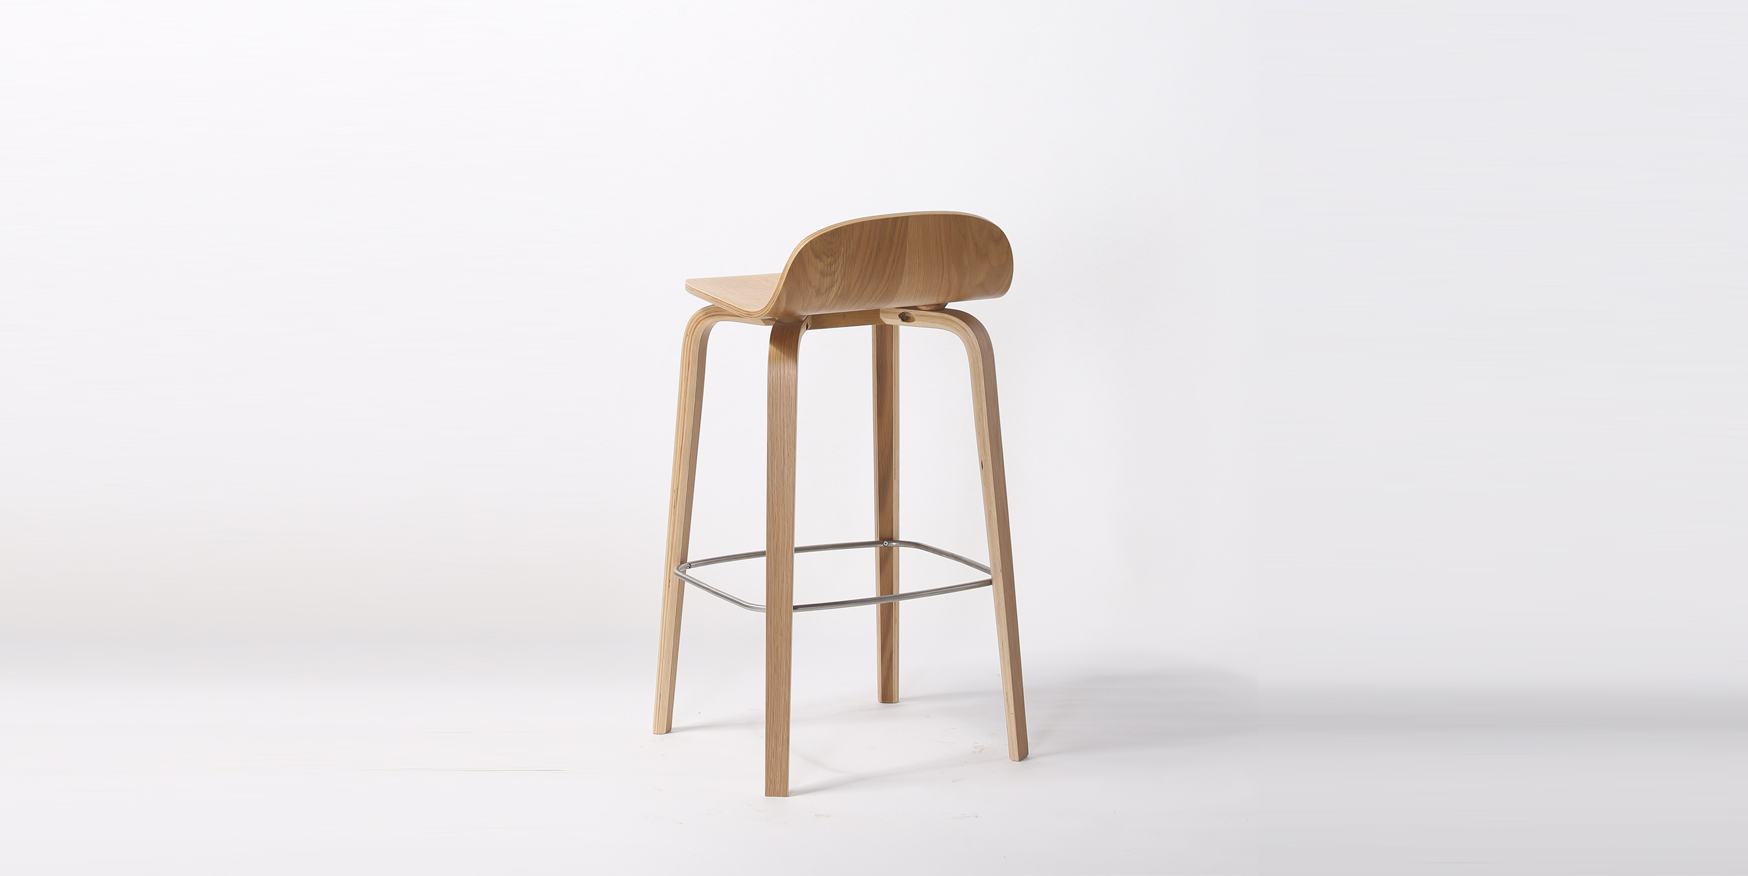 bent wood counter stool
